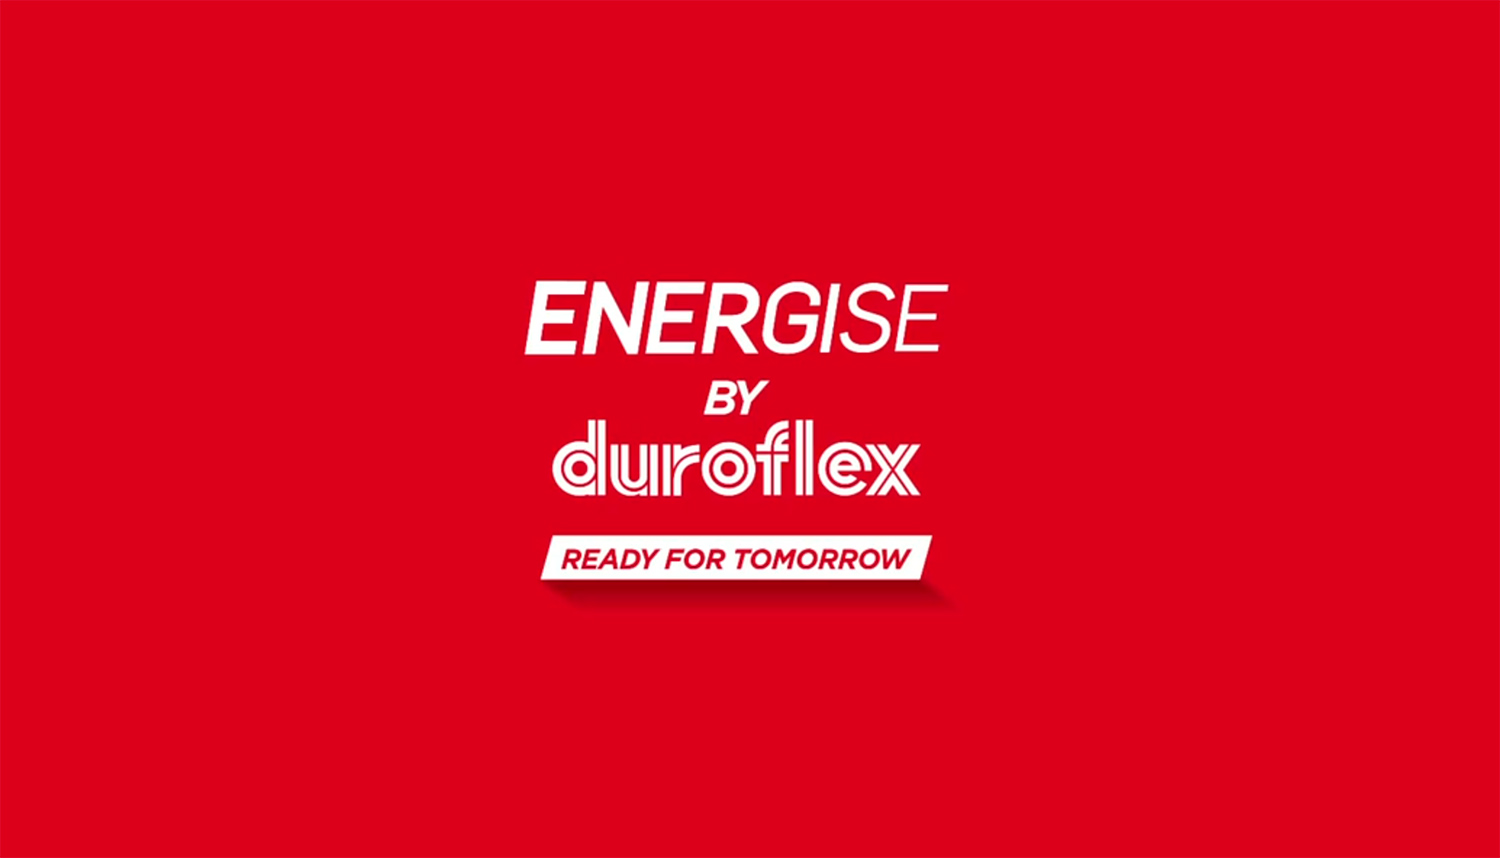 #ReadyForTomorrow - Duroflex